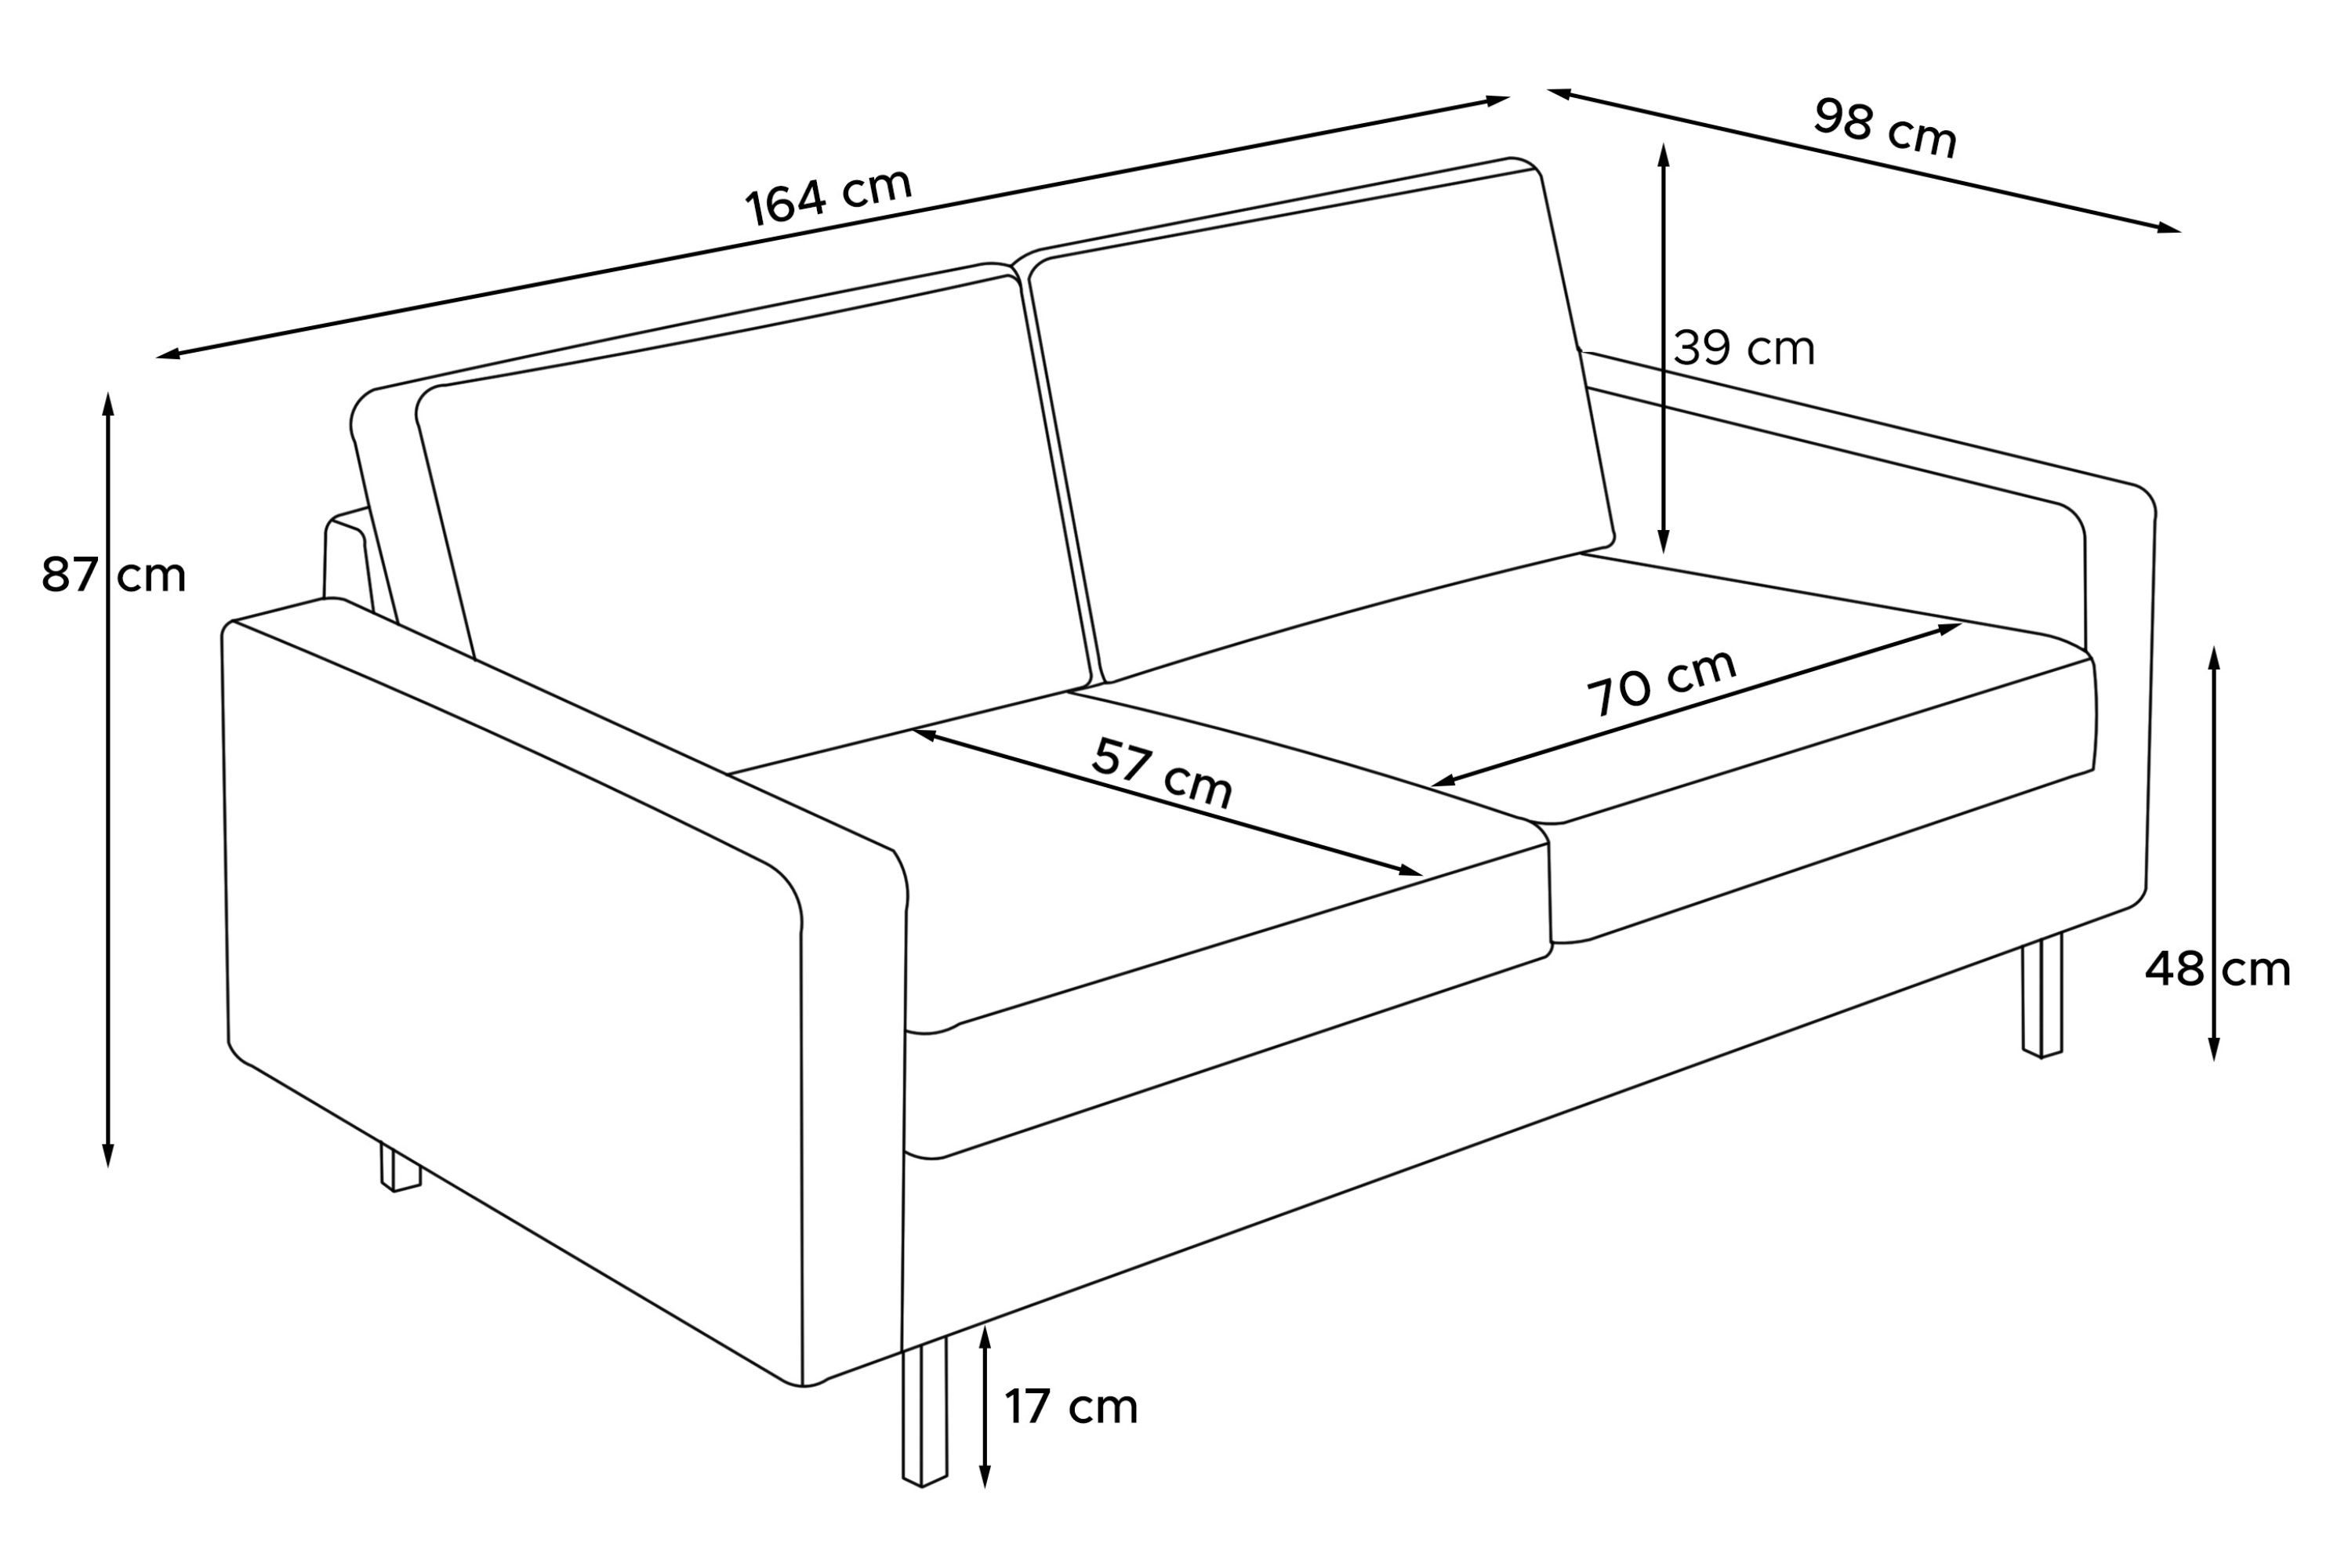 Polsterung Schaumstoff, in 2-Sitzer aus Zweisitzer-Sofa, Pet Konsimo Cord-Stoff INVIA Friendly hochwertigem